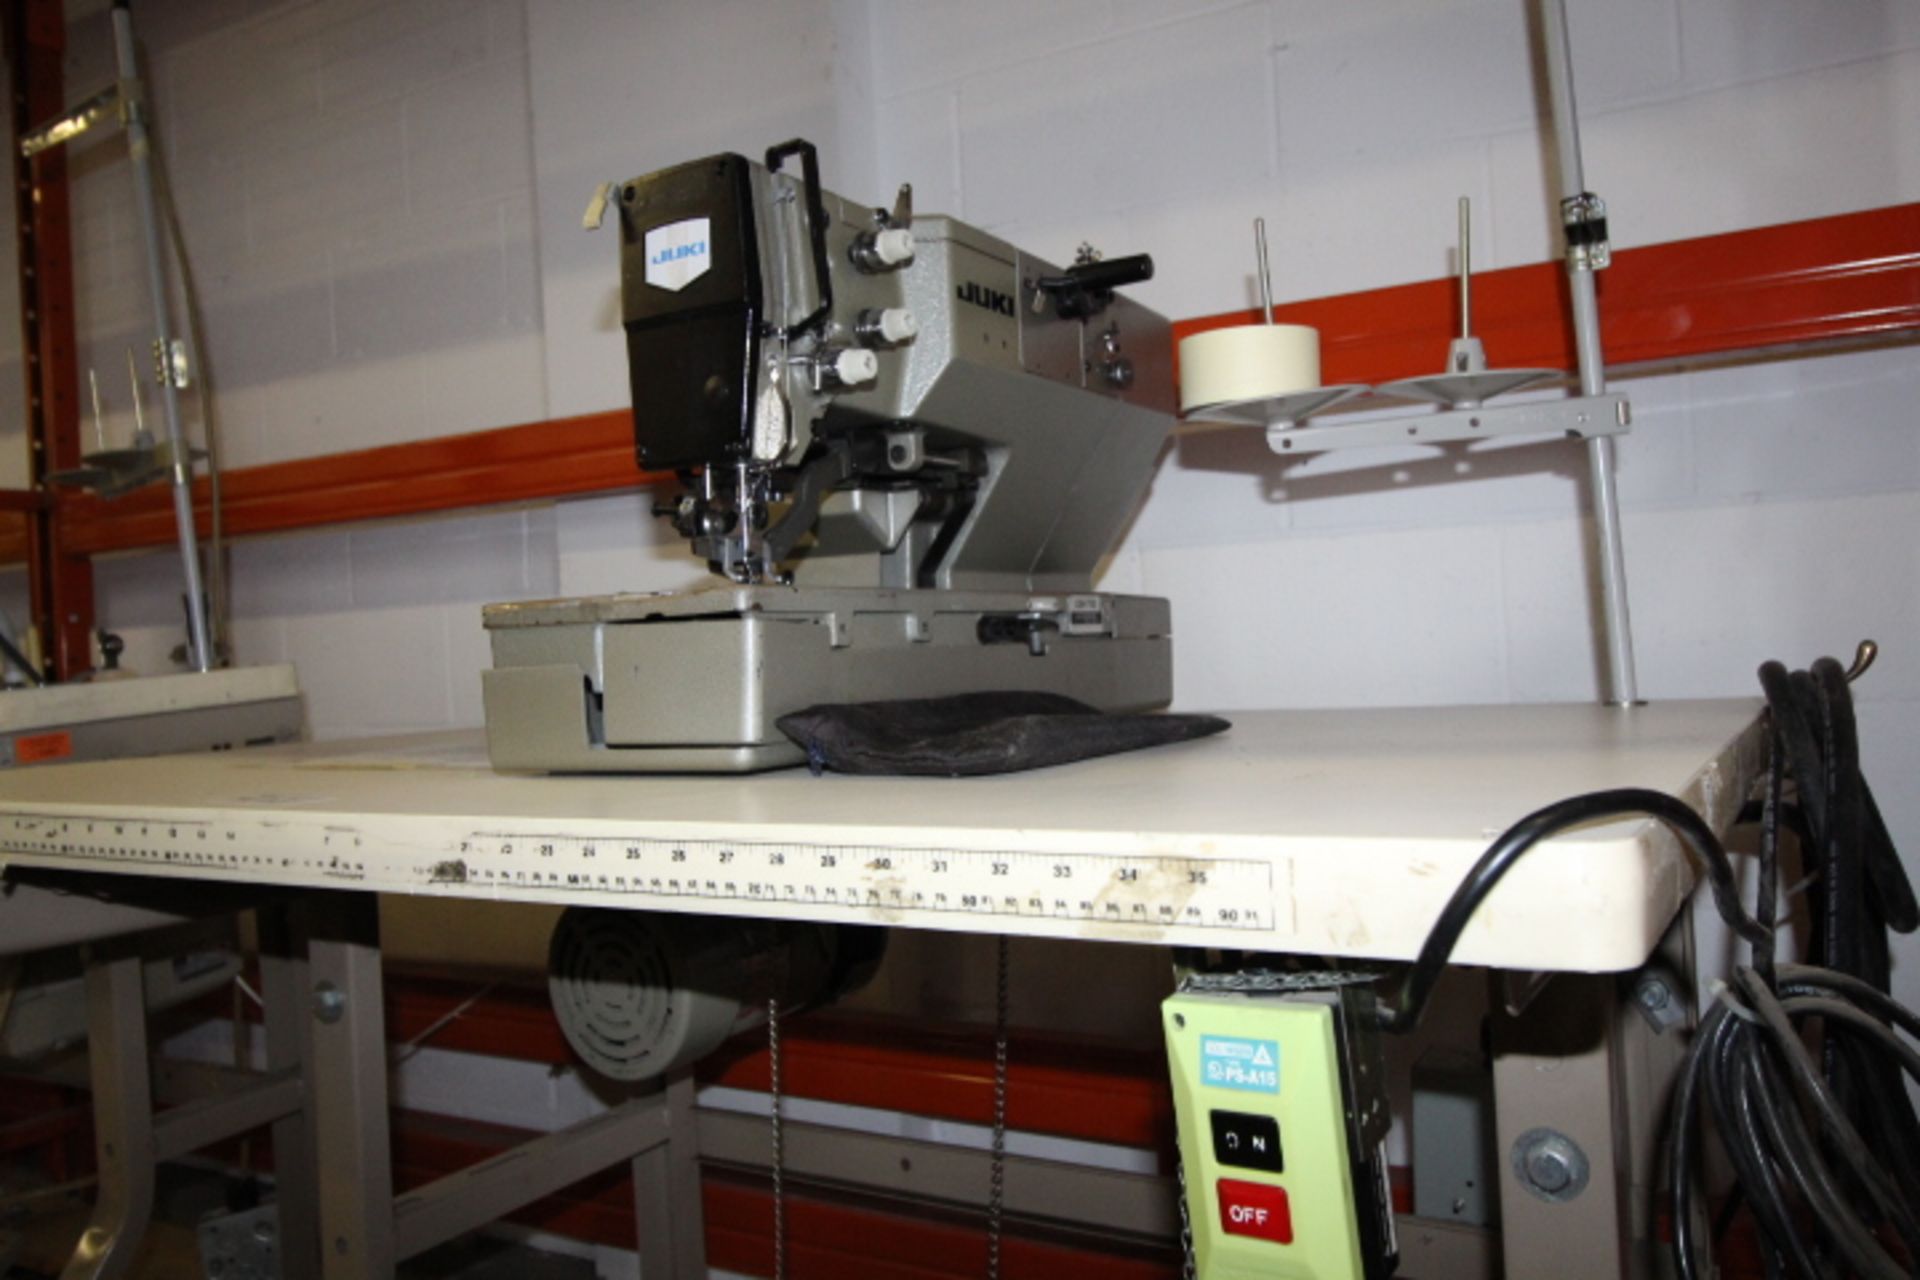 Juki Bar Tacker Sewing Machine 3phase, M#LBH793 - Image 4 of 4